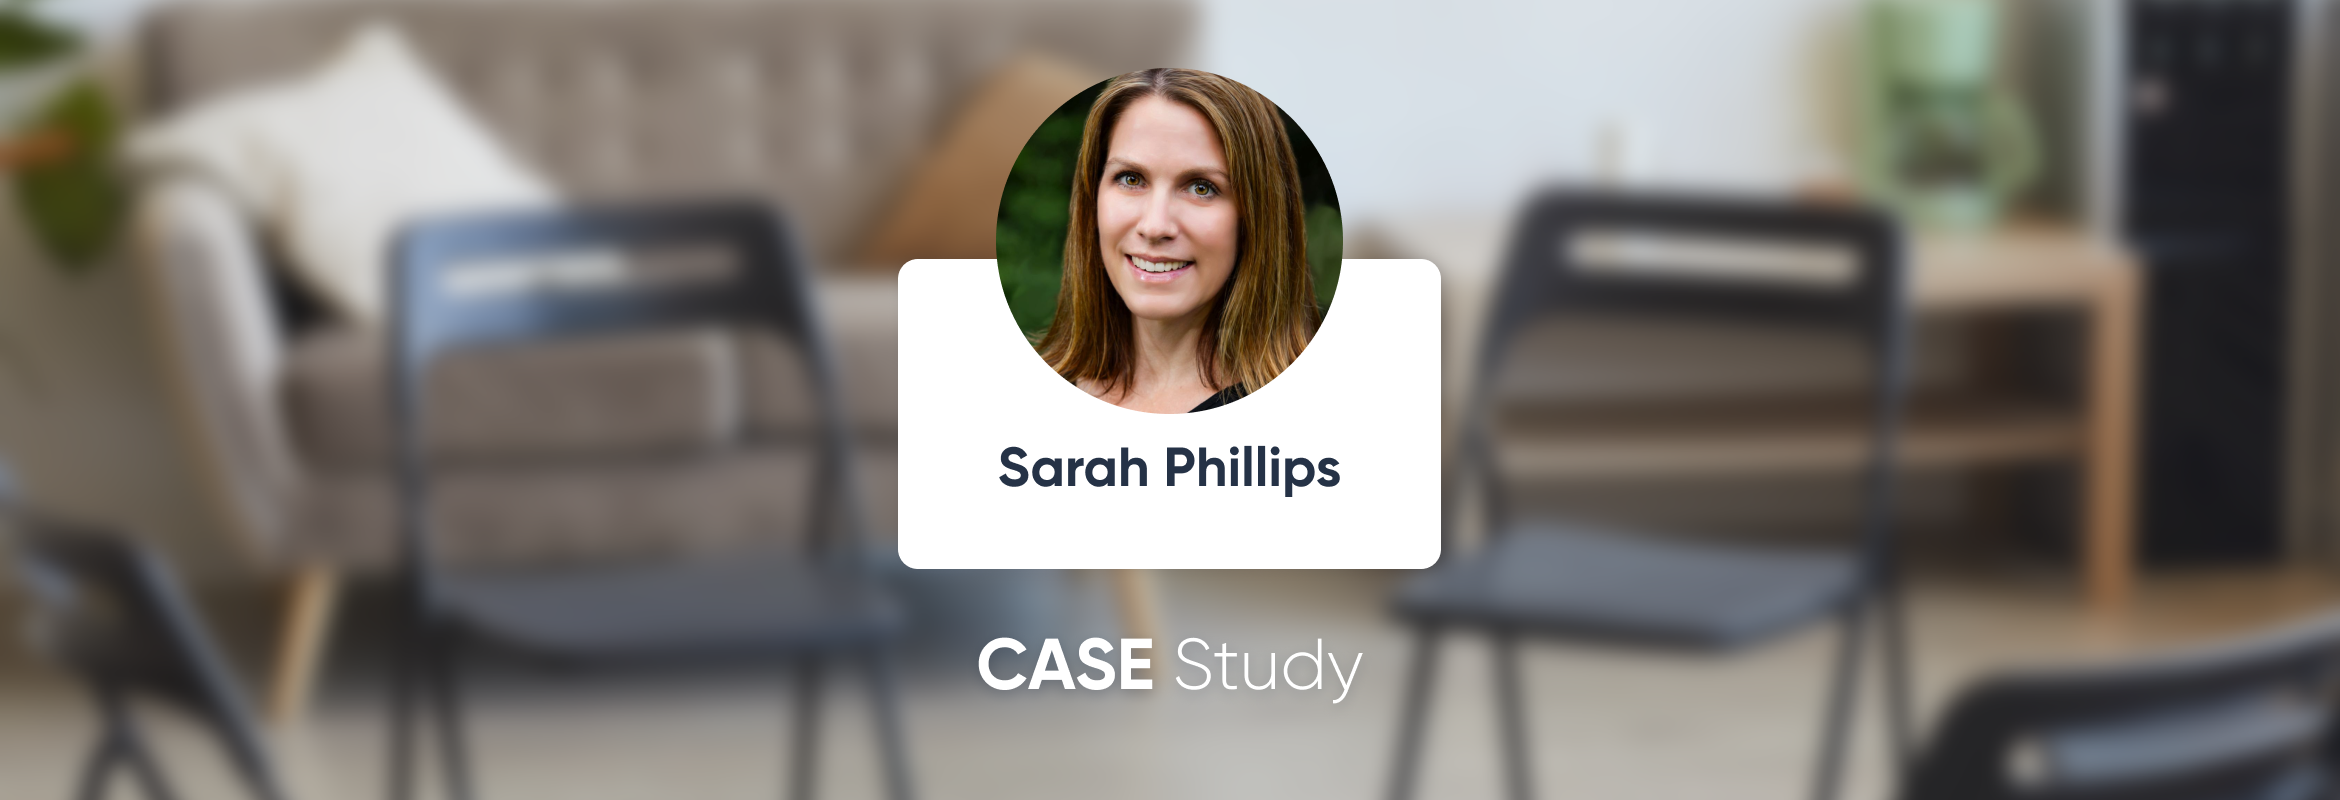 Sarah Phillips, LCSW - Étude de cas